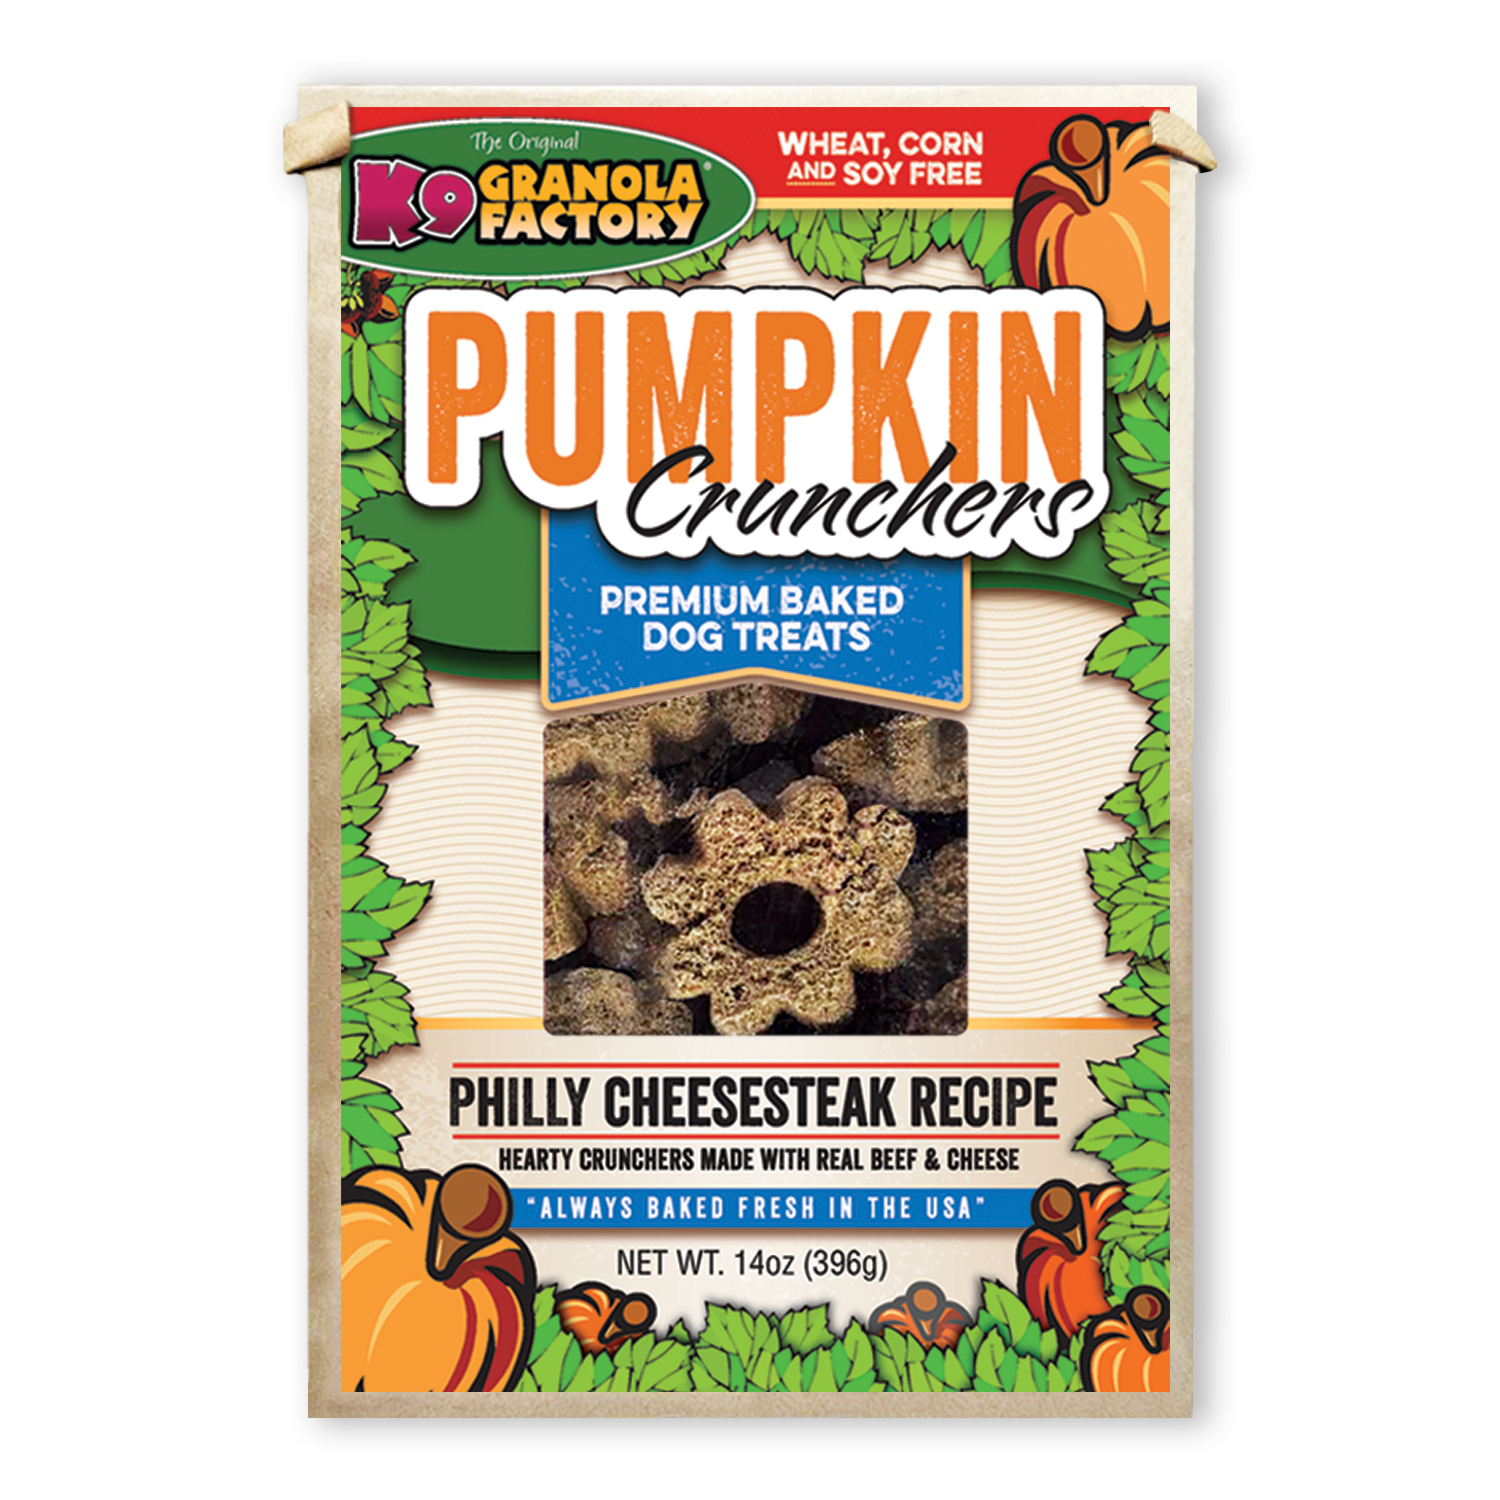 K9 Granola Factory Pumpkin Crunchers Dog Treats, Philly Cheesesteak